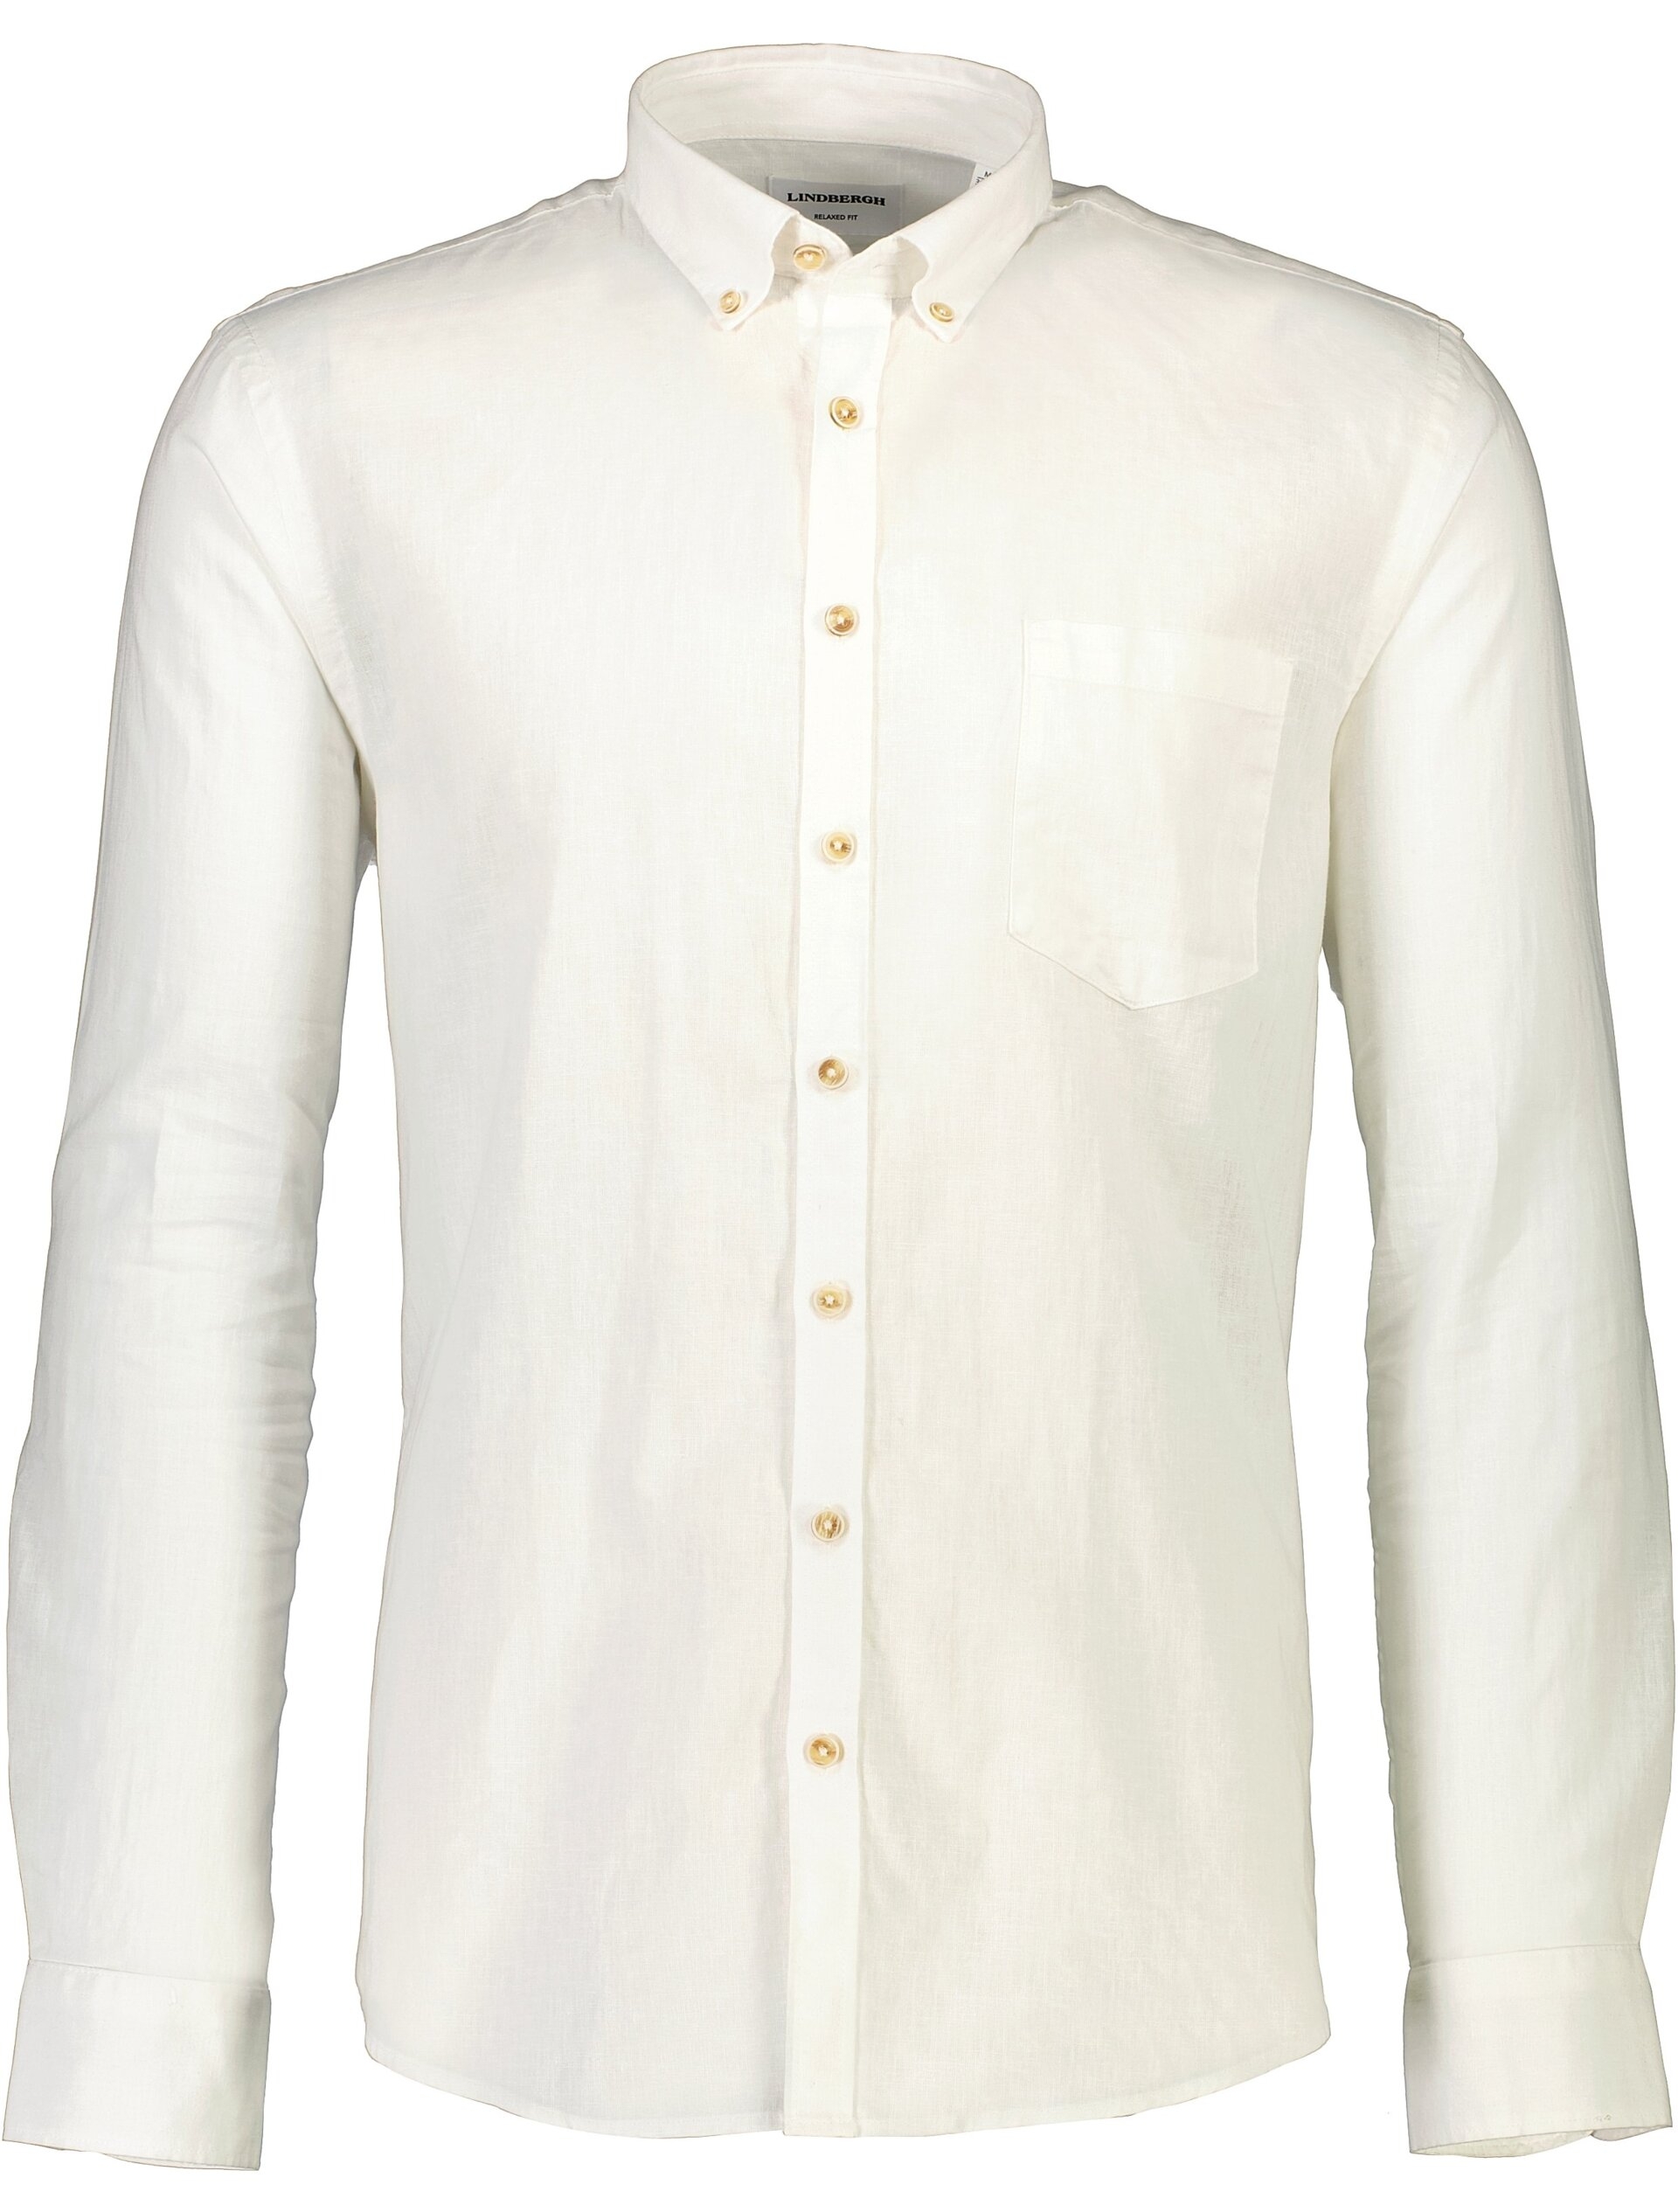 Lindbergh Linnen overhemd wit / white